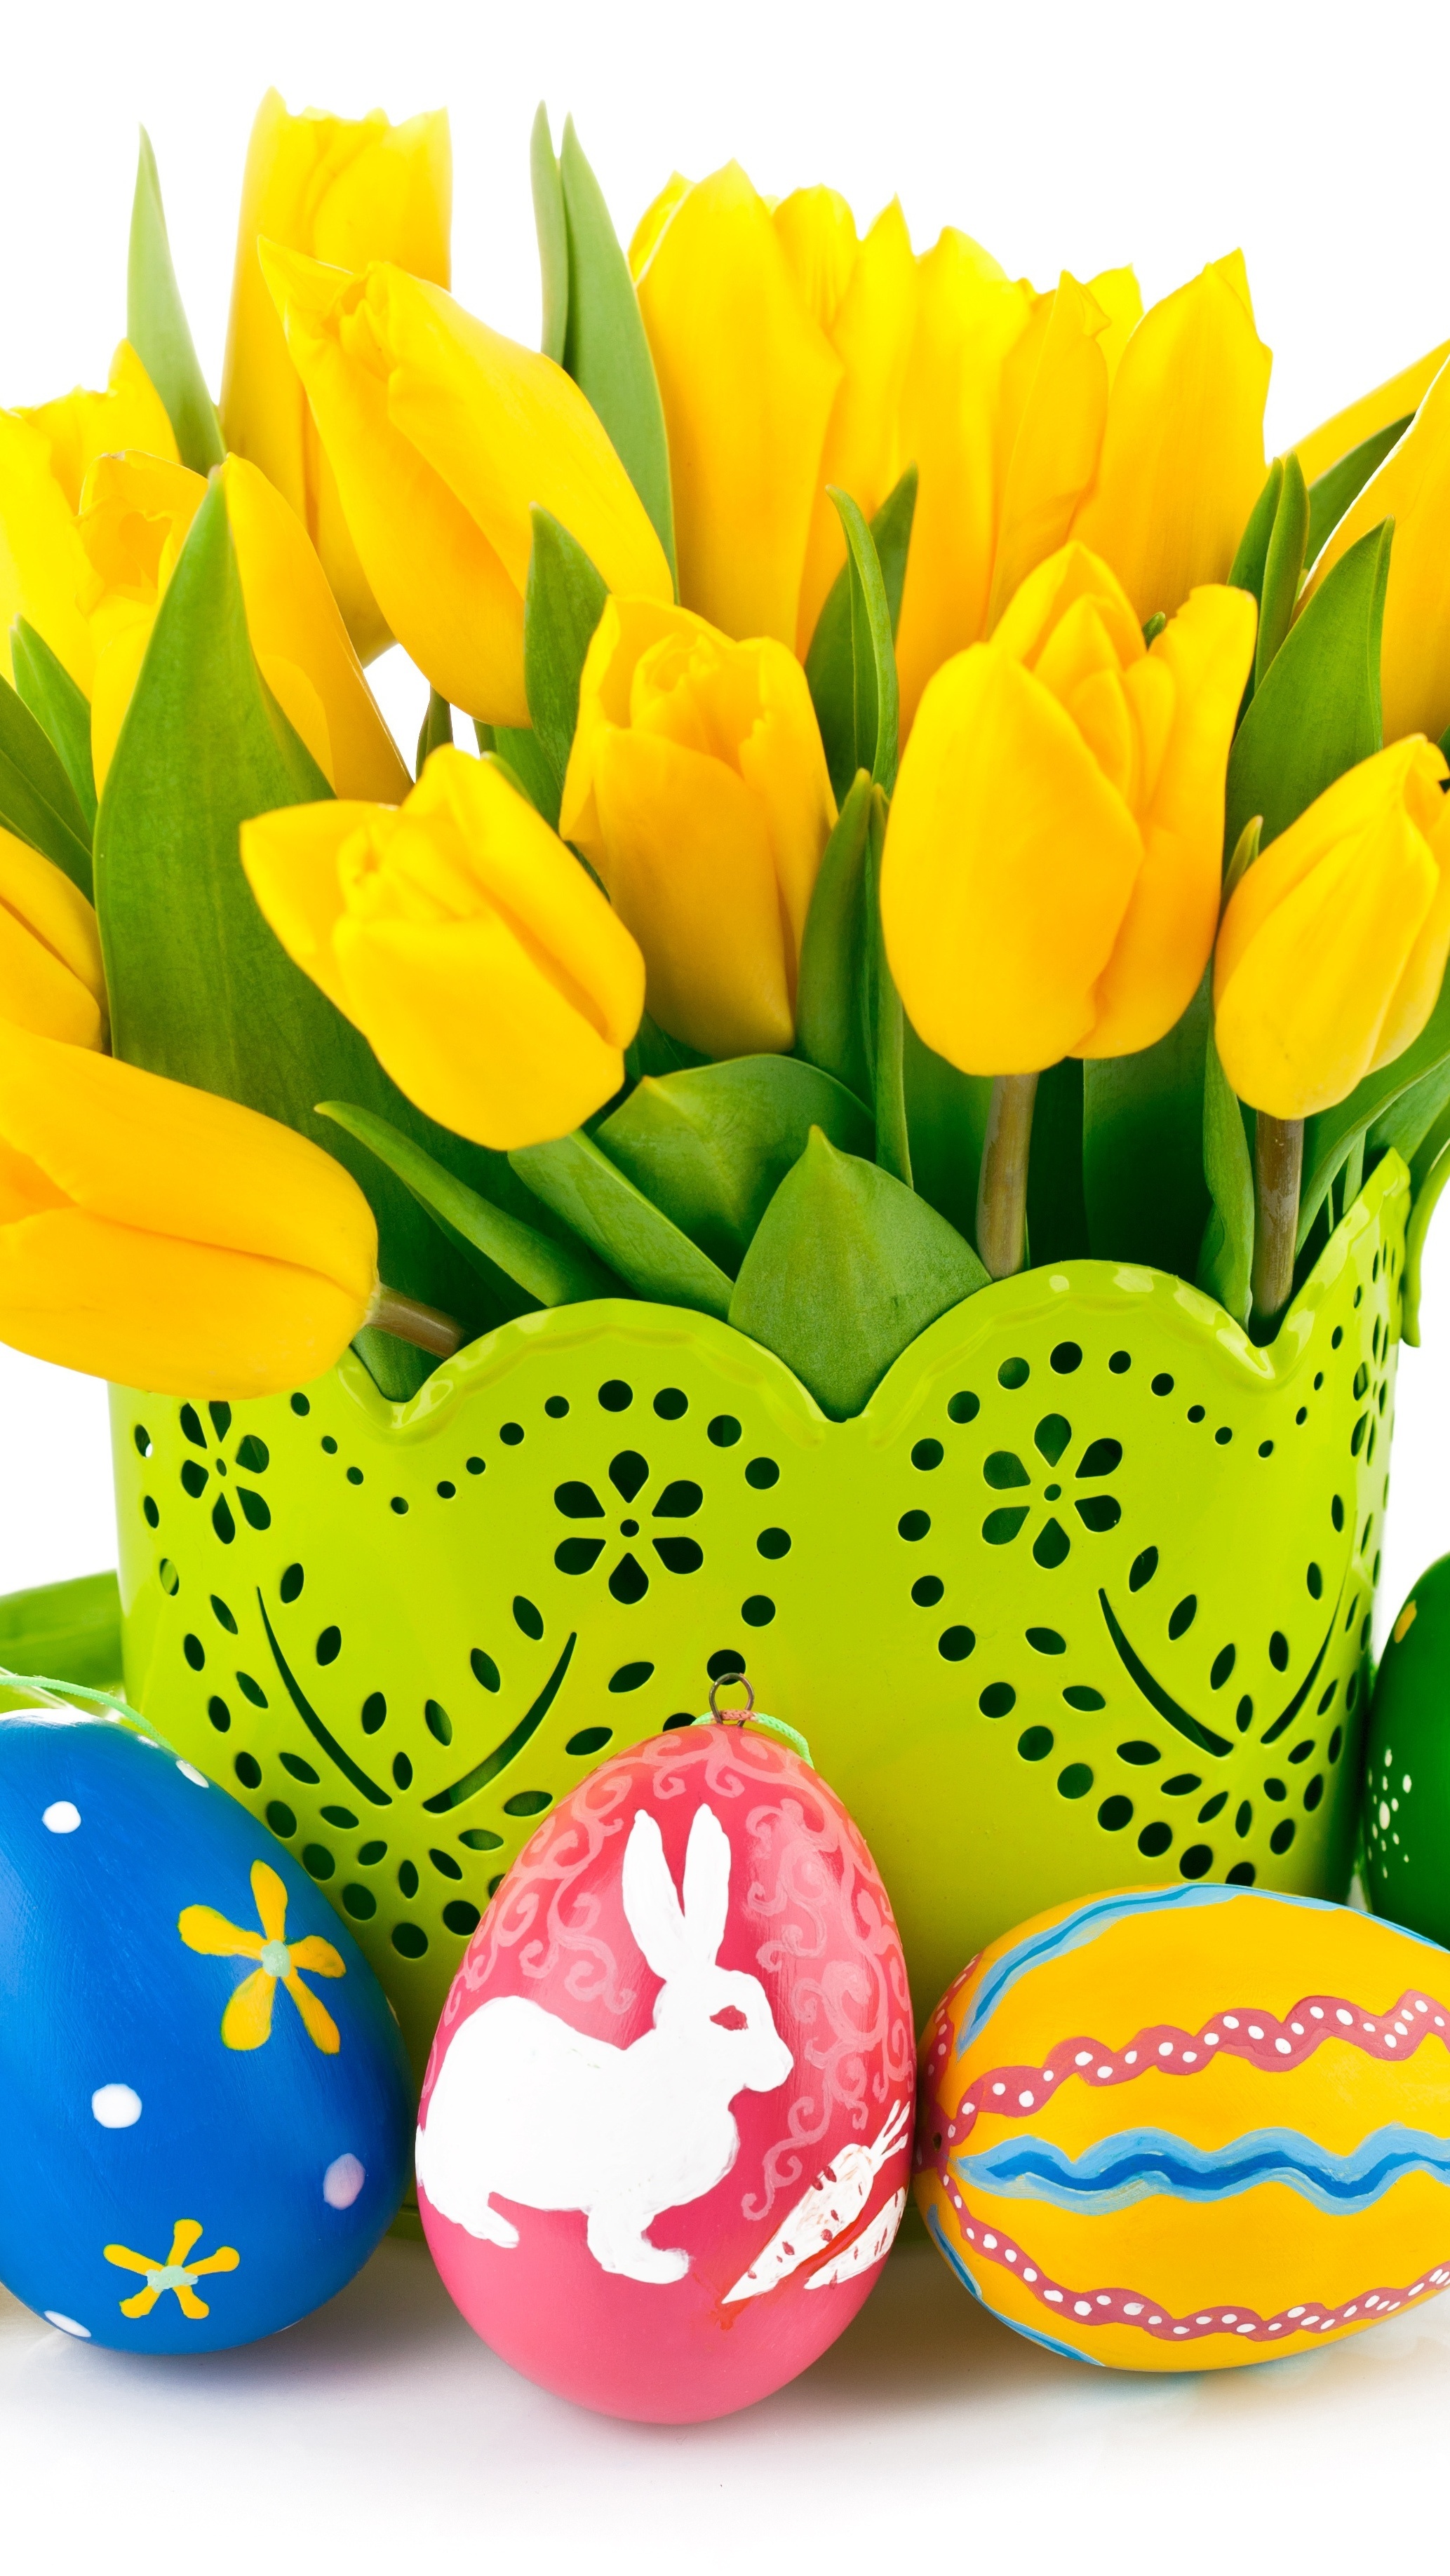 Wielkanocne pisanki obok żółtych tulipanów